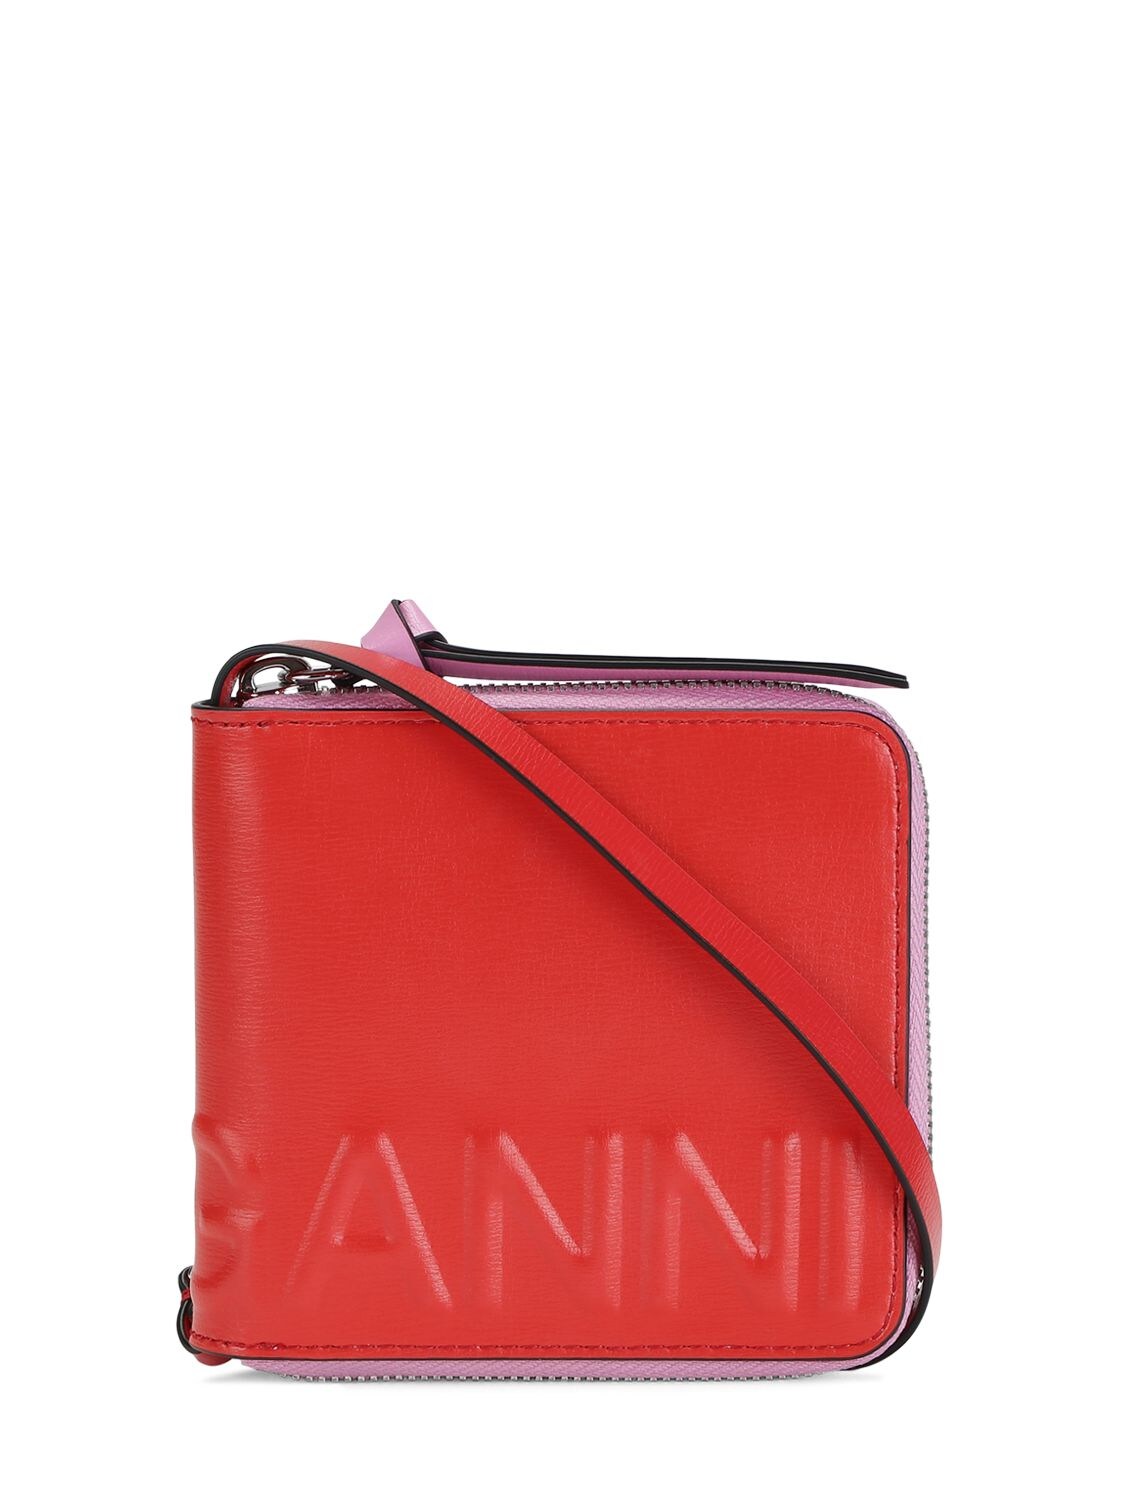 GANNI Logo Leather Wallet W/ Strap